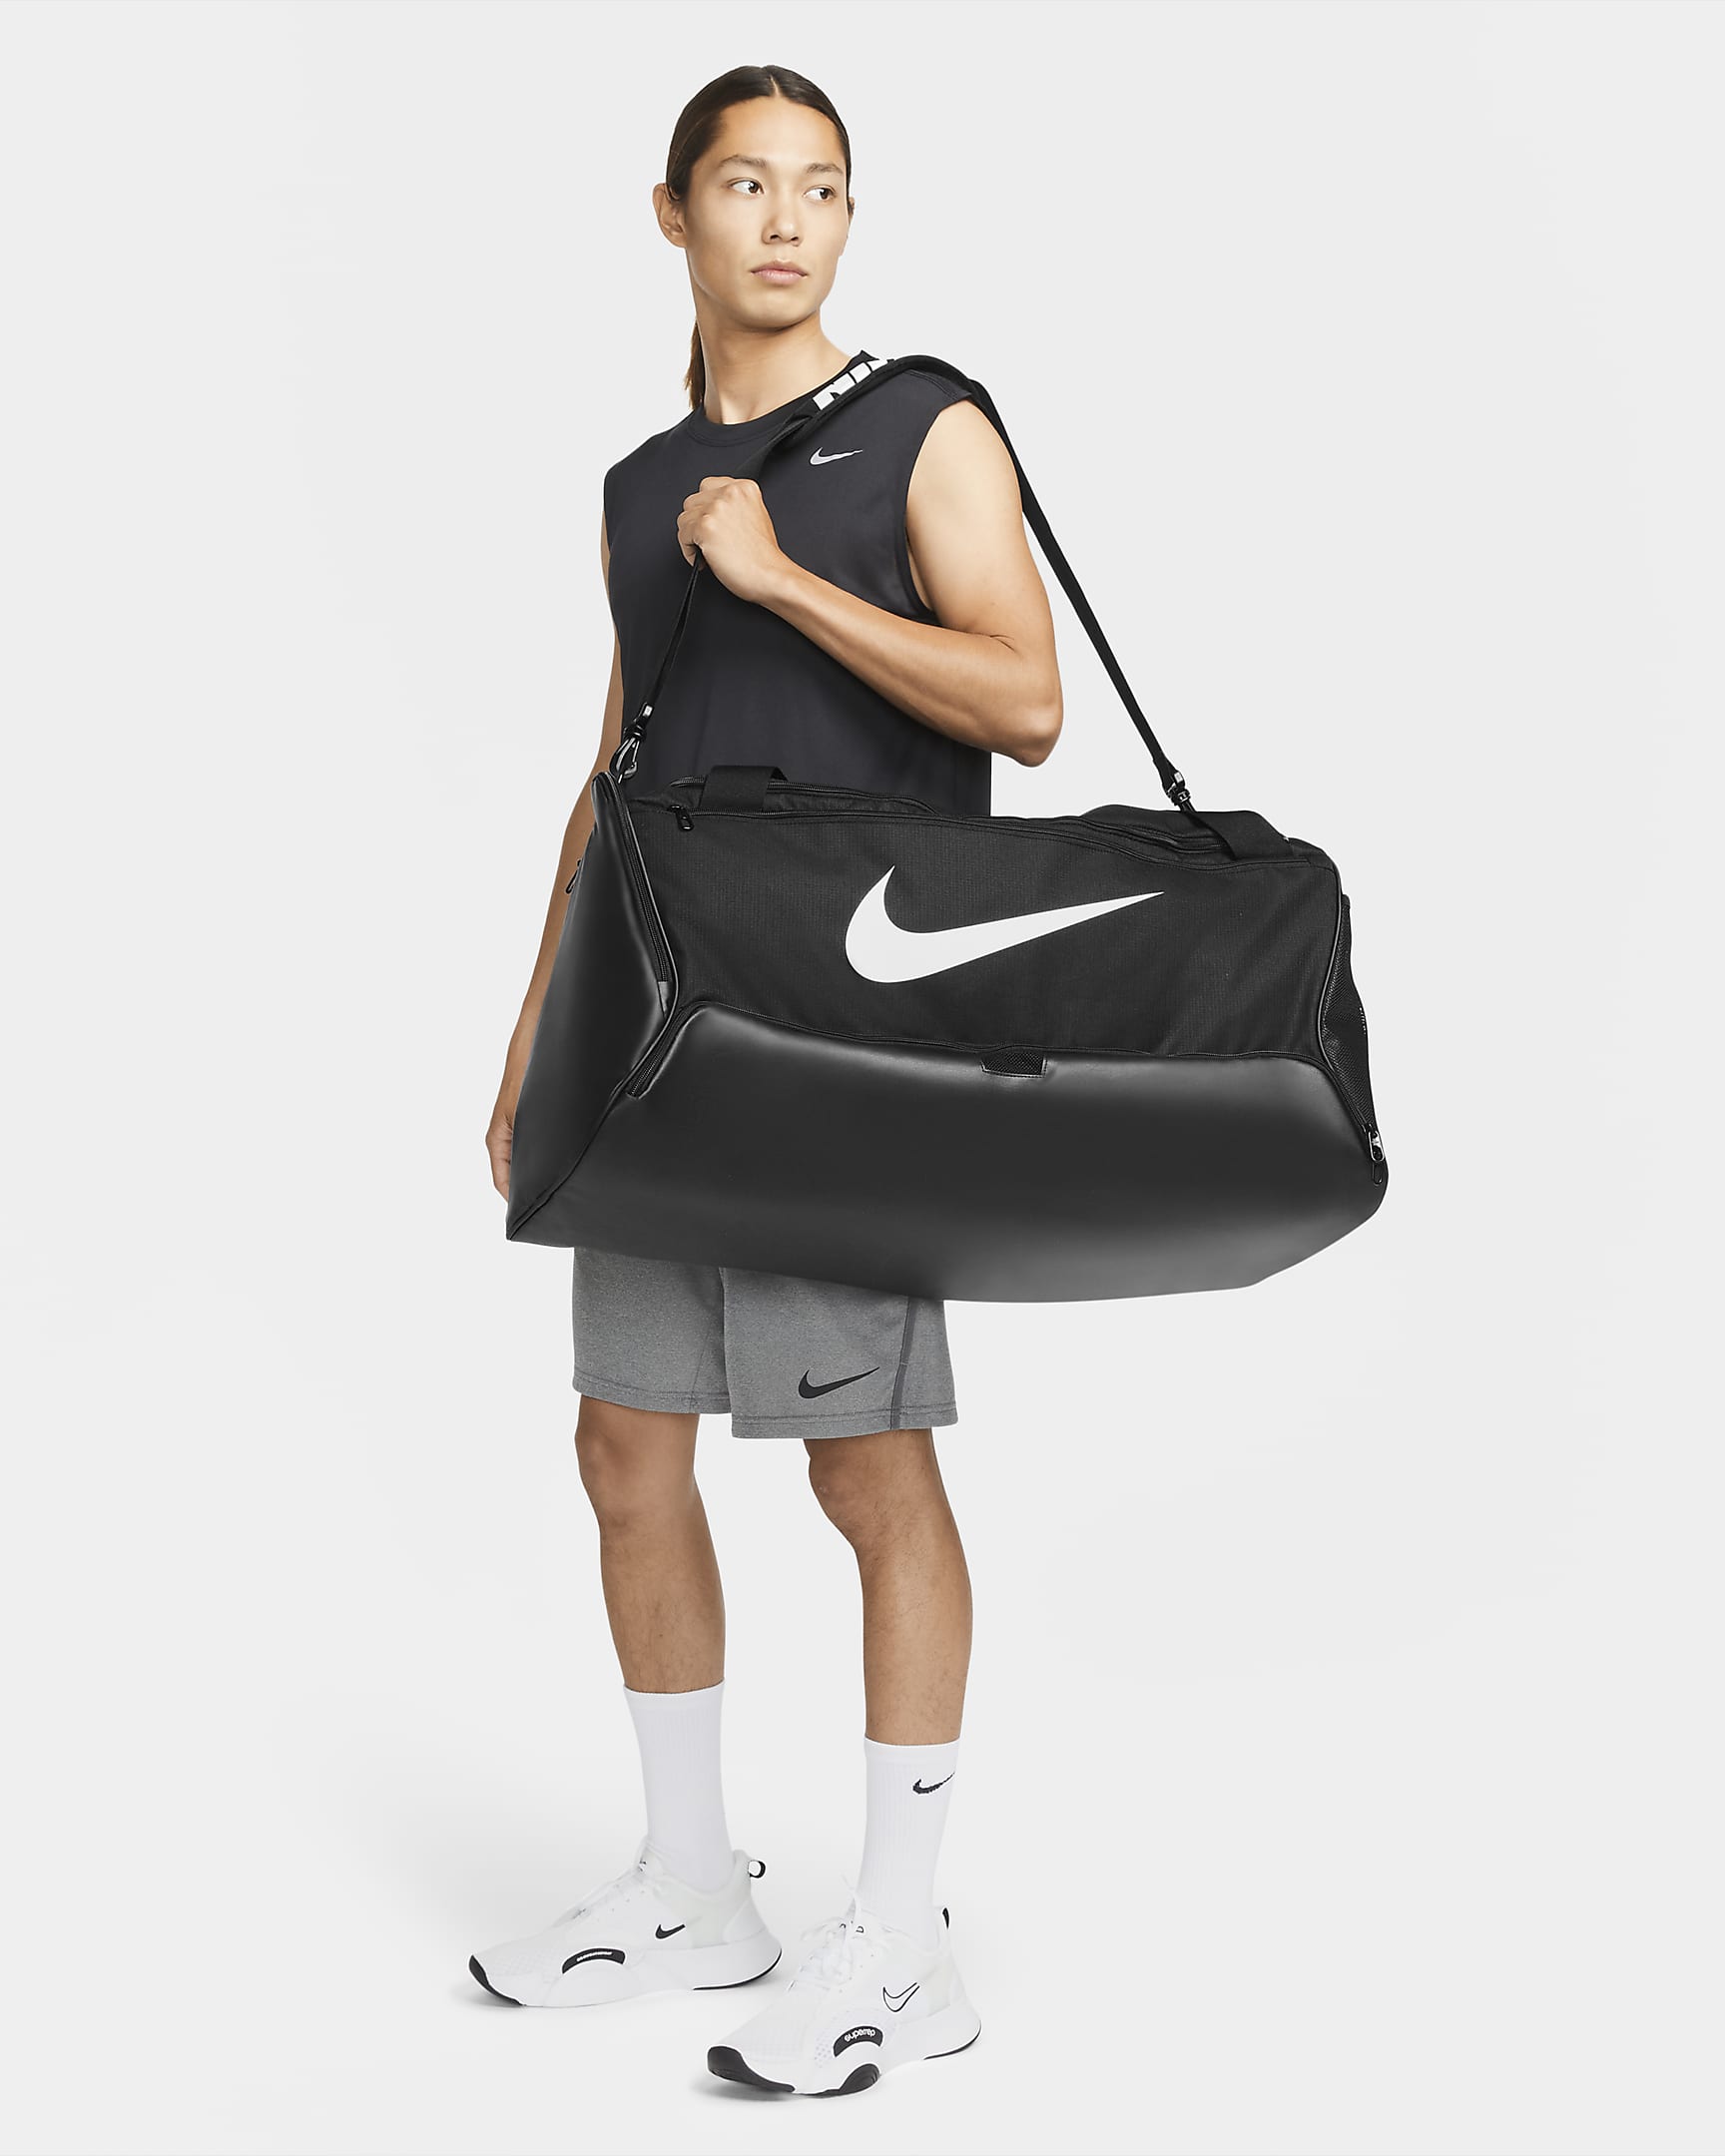 Nike Brasilia 9.5 Training Duffel Bag (Large, 95L) - Black/Black/White